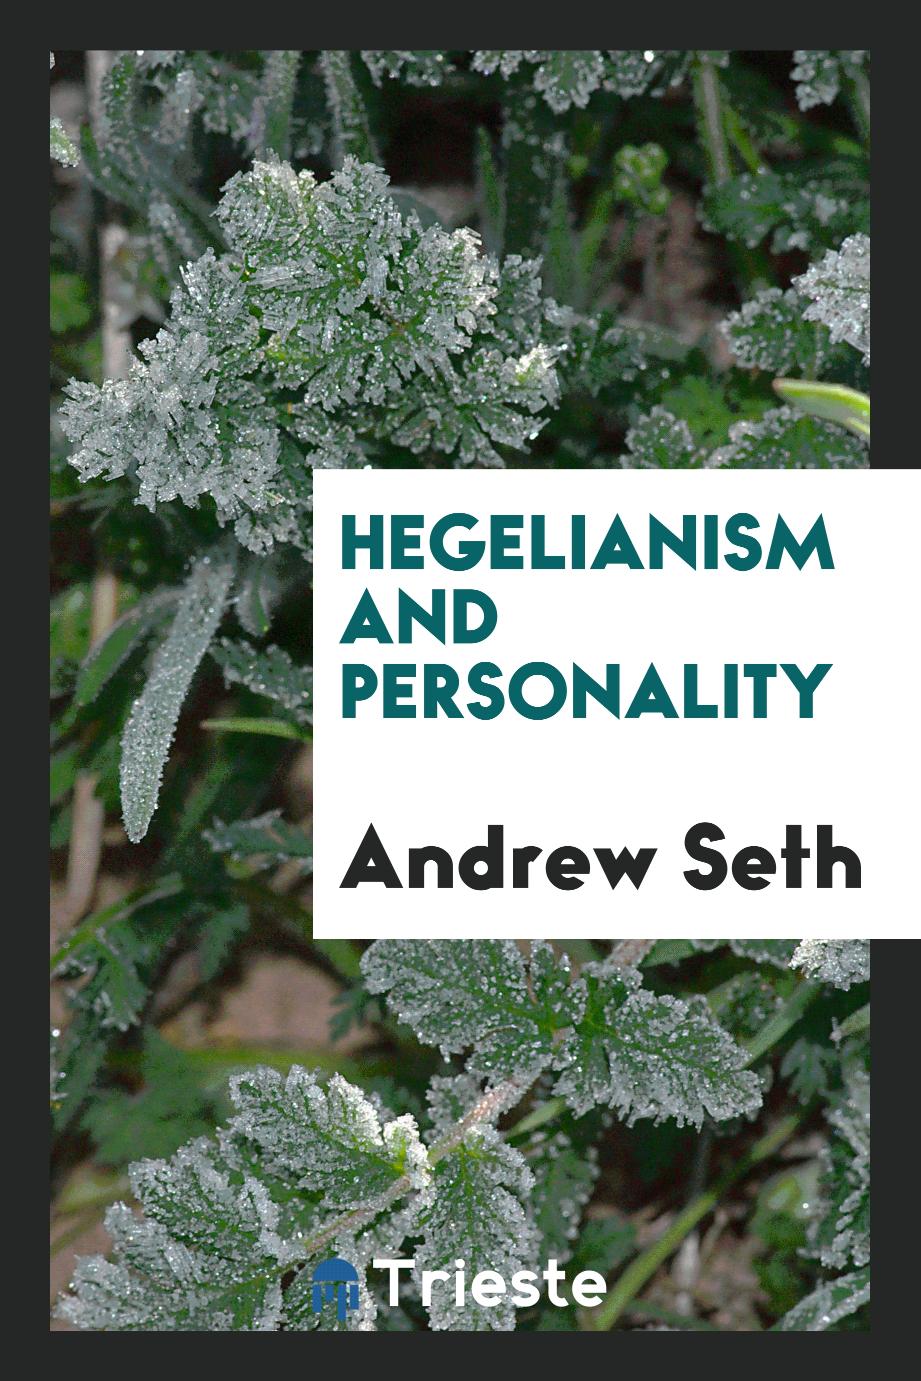 Hegelianism and personality